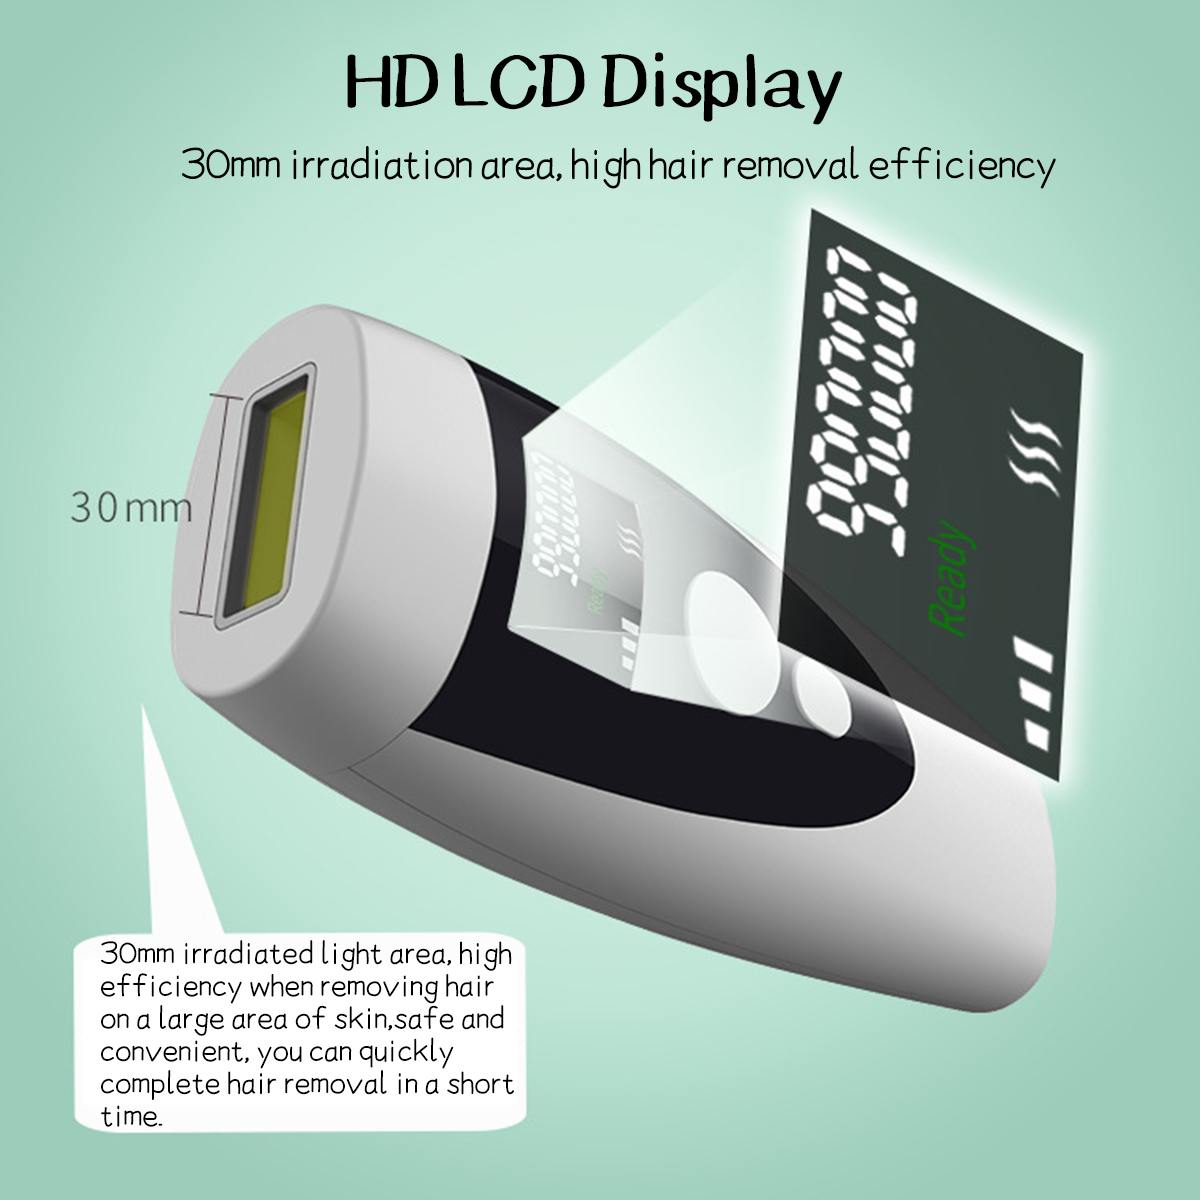 990000 flashs Laser épilateur LCD affichage Permanent IPL photoépilateur épilation indolore Depiladora électrique corps épilateur